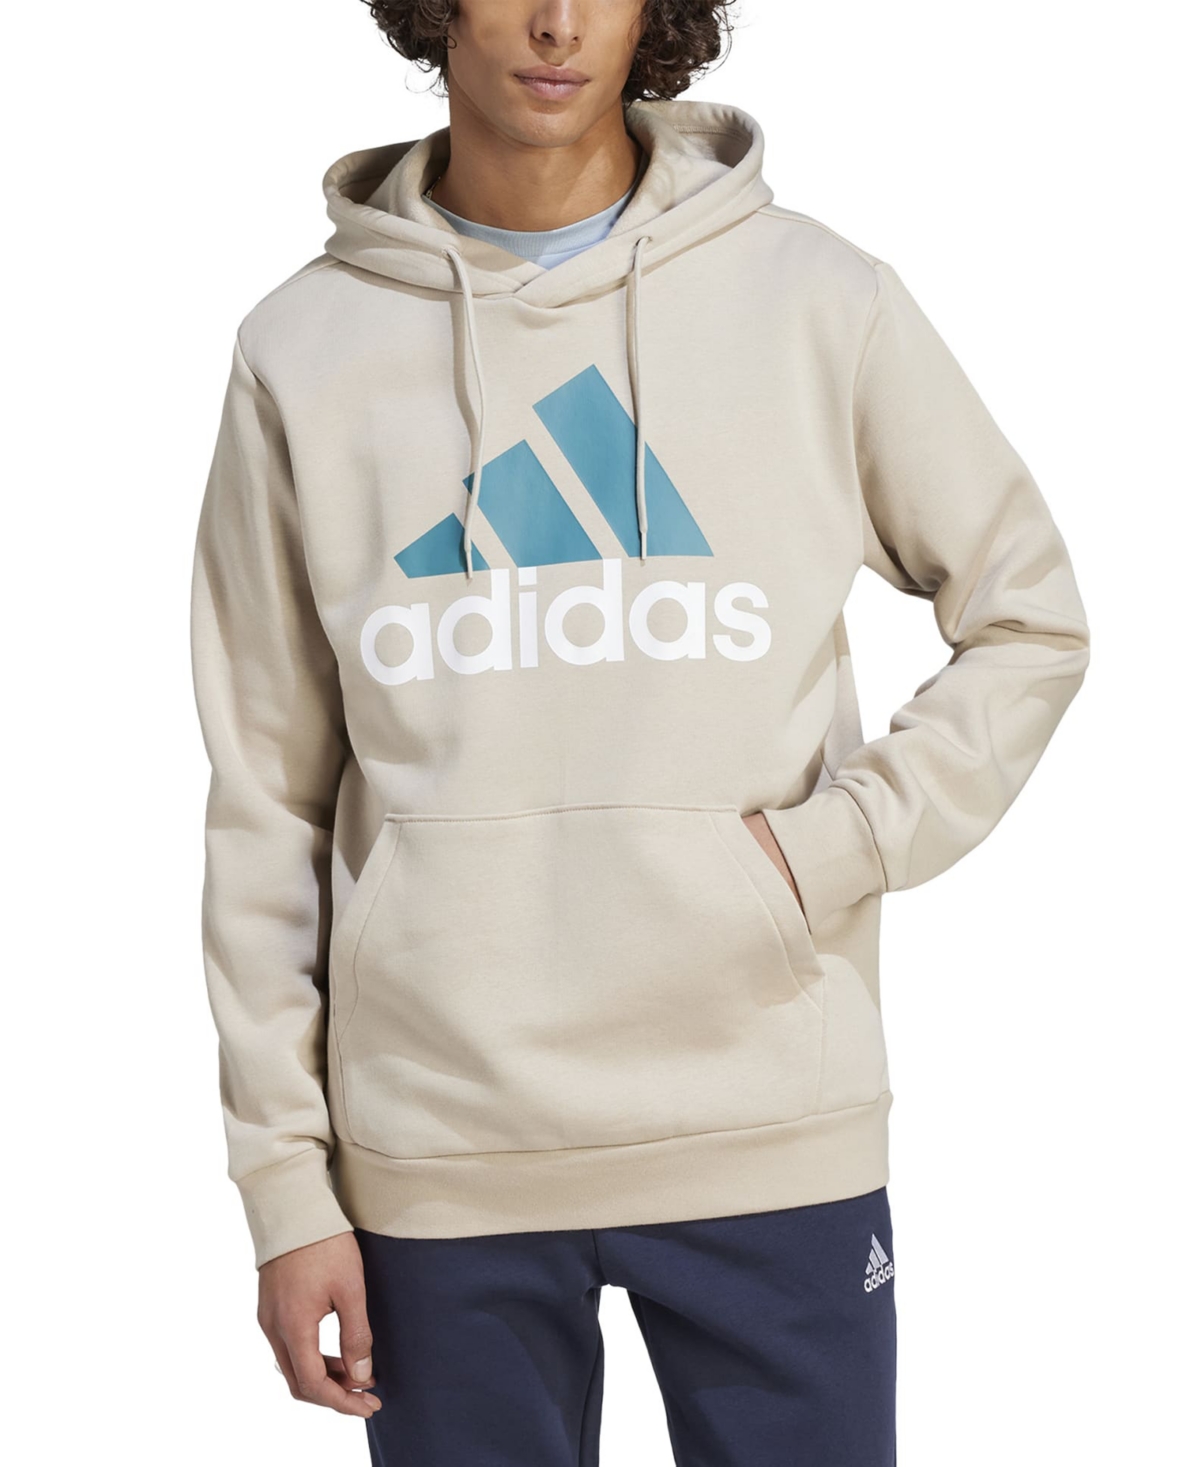 Adidas Originals Men's Essentials Fleece Big Logo Hoodie In Beige,arctic